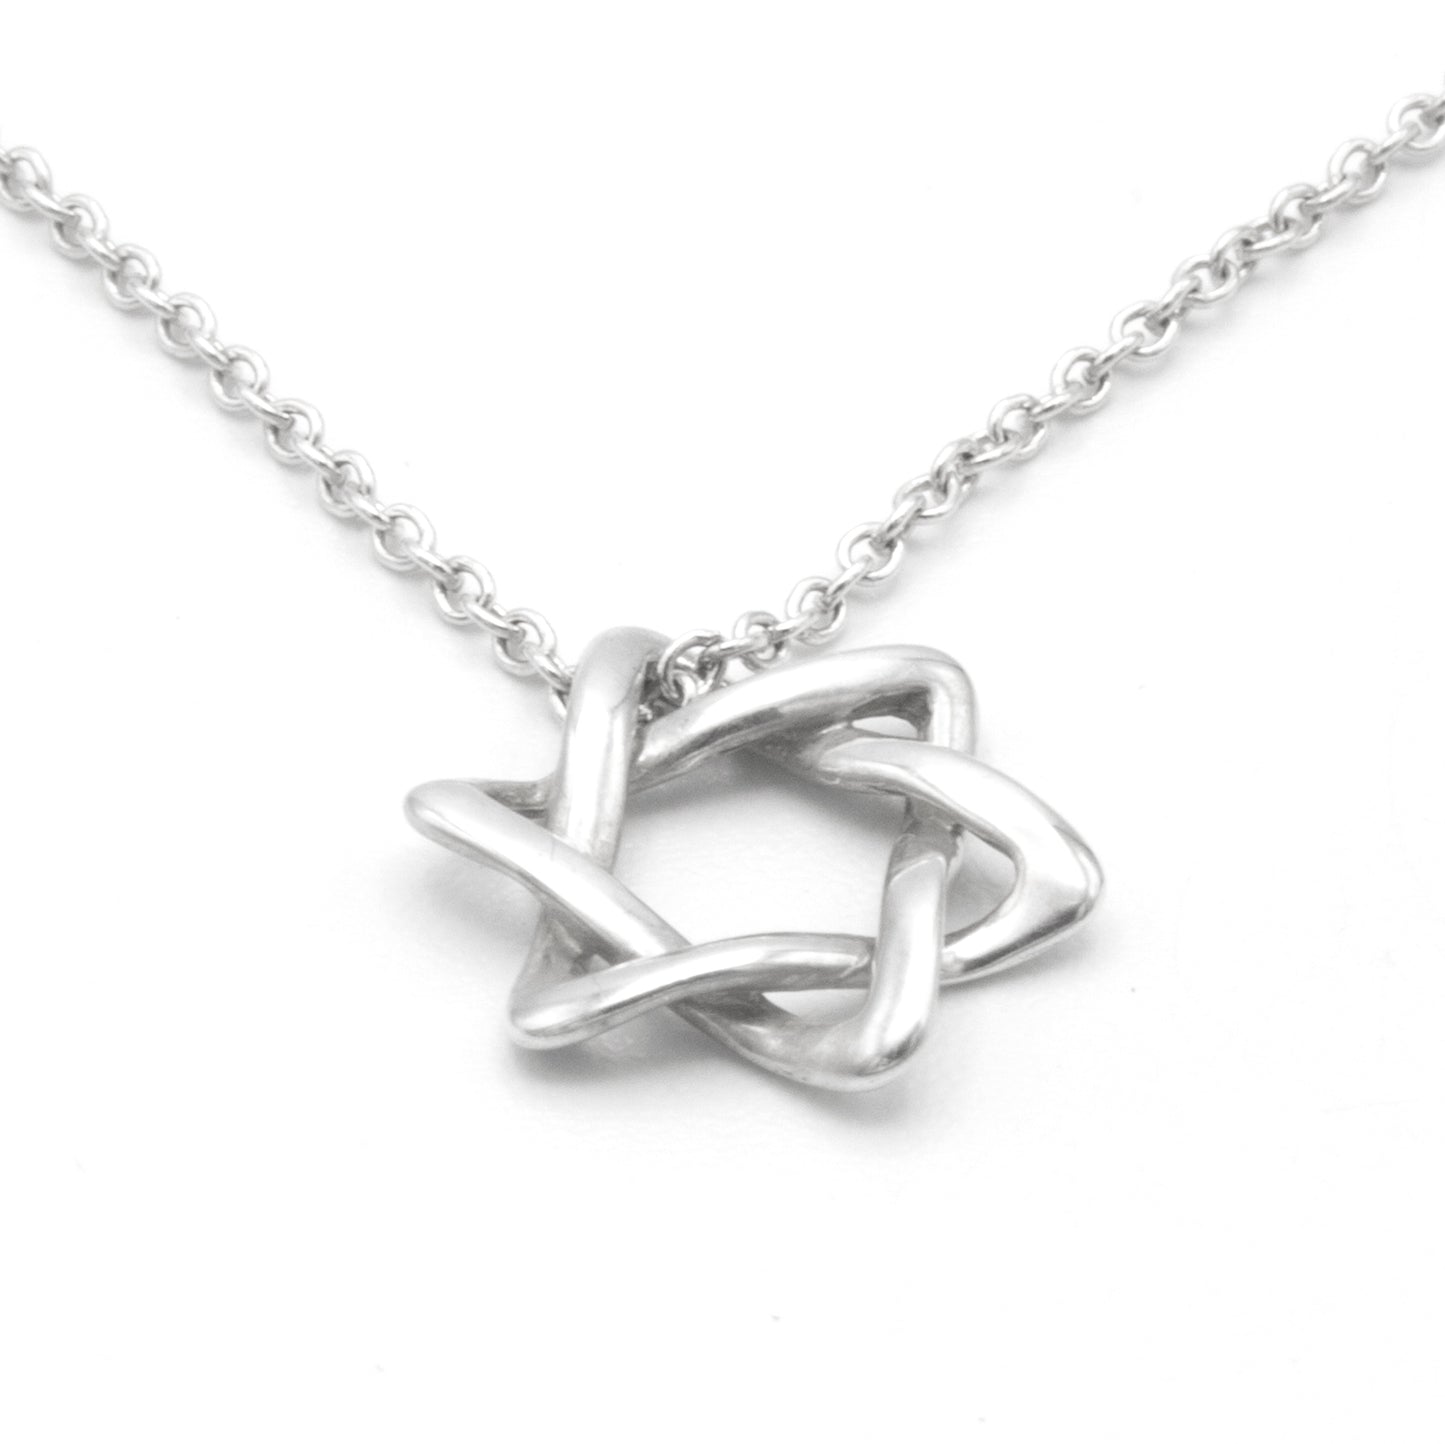 Tiffany & Co David Star necklace